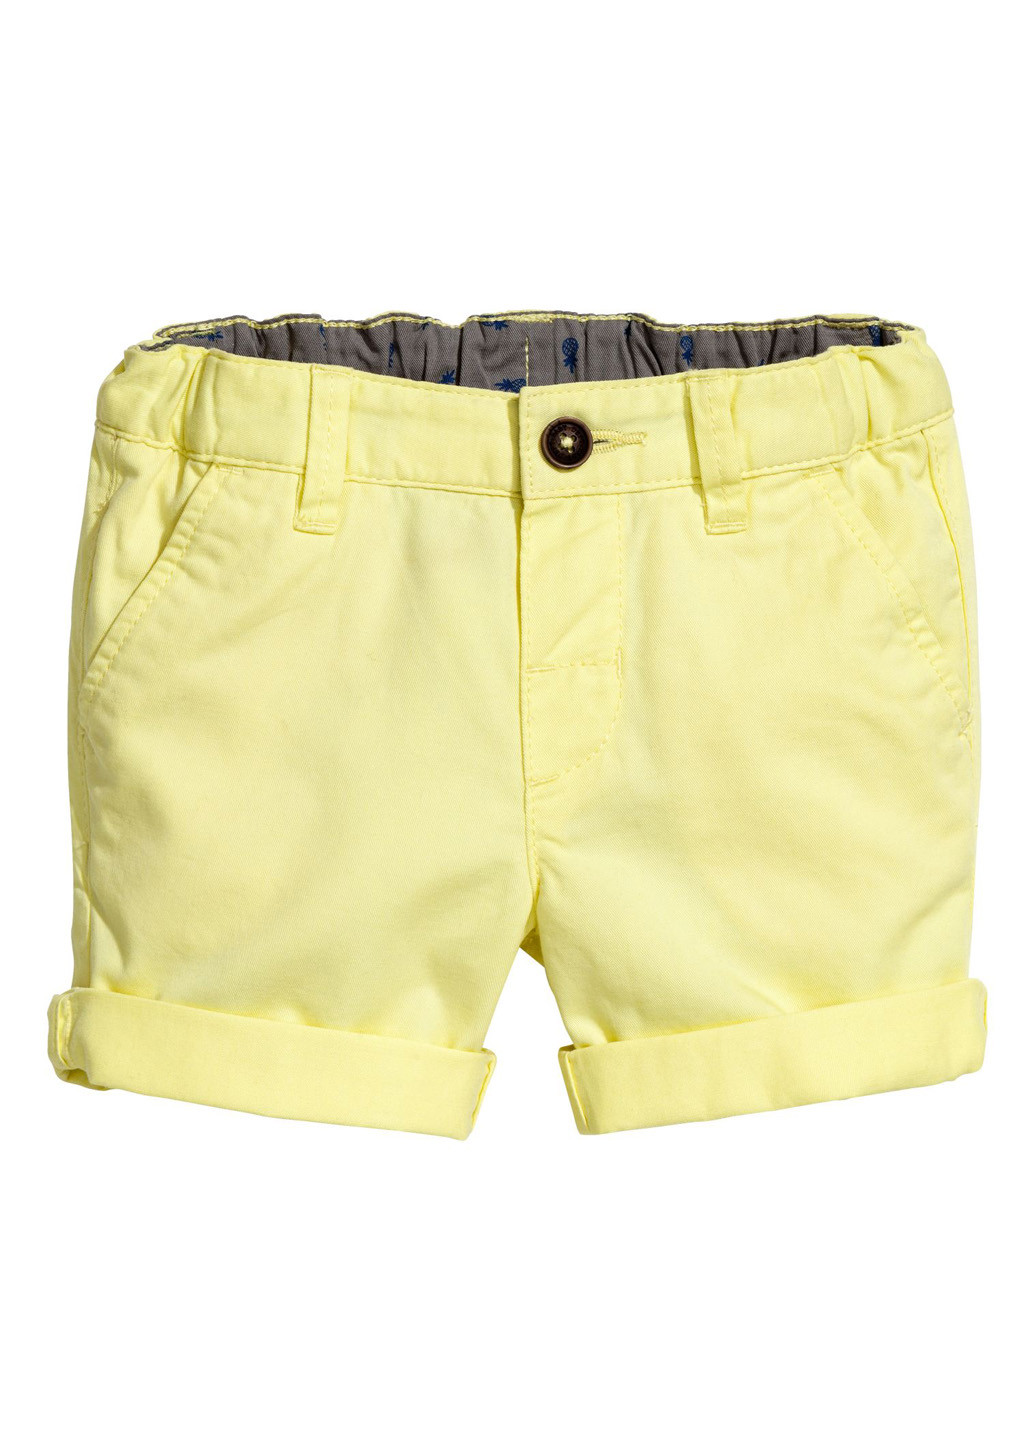 Шорты H&M однотонные жёлтые джинсовые хлопок